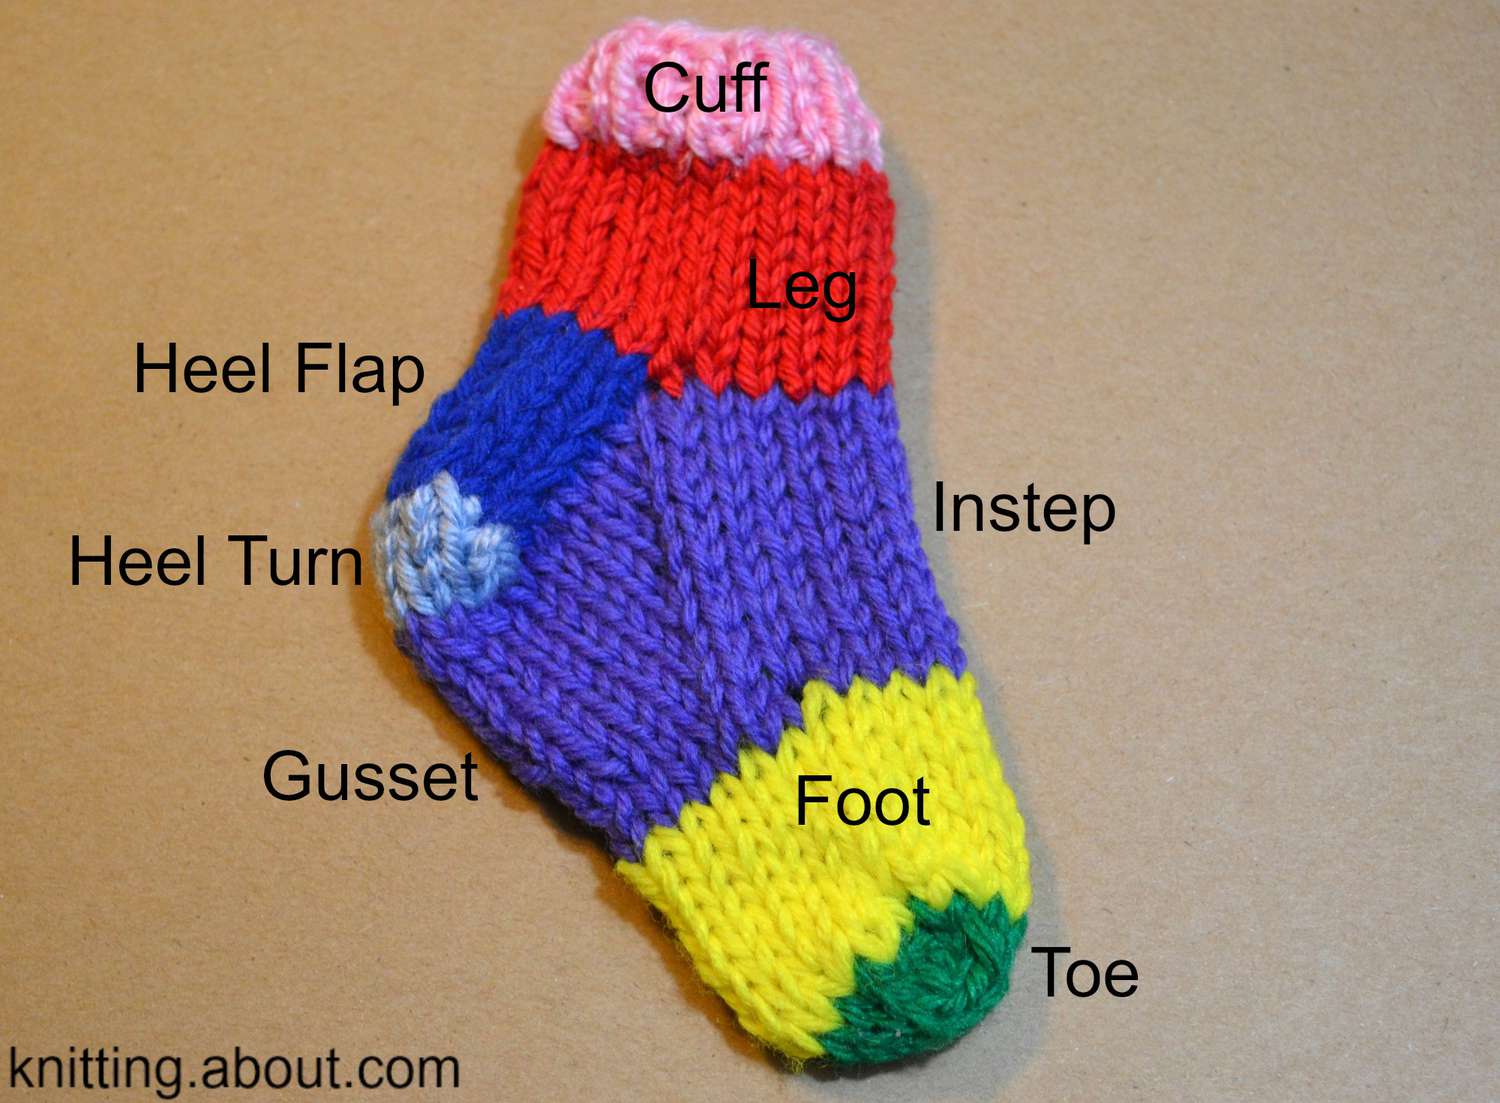 袜子的组成部分和袜子编织术语的定义。